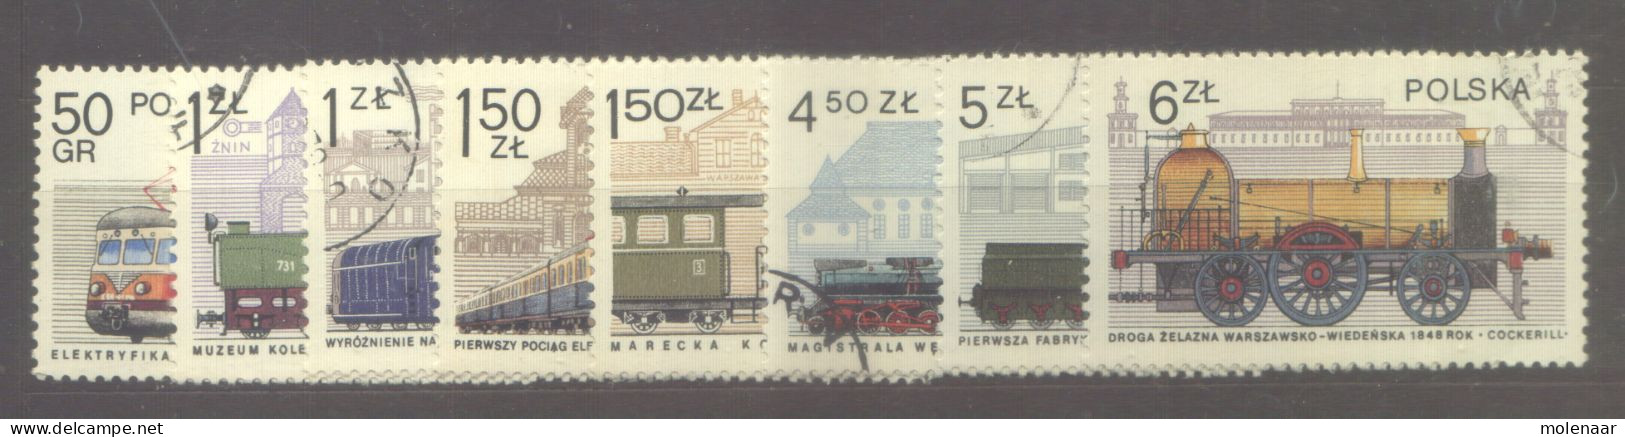 Postzegels > Europa > Polen > 1944-.... Republiek > 1971-80 > Gebruikt No. 2540-2547  (24152) - Used Stamps